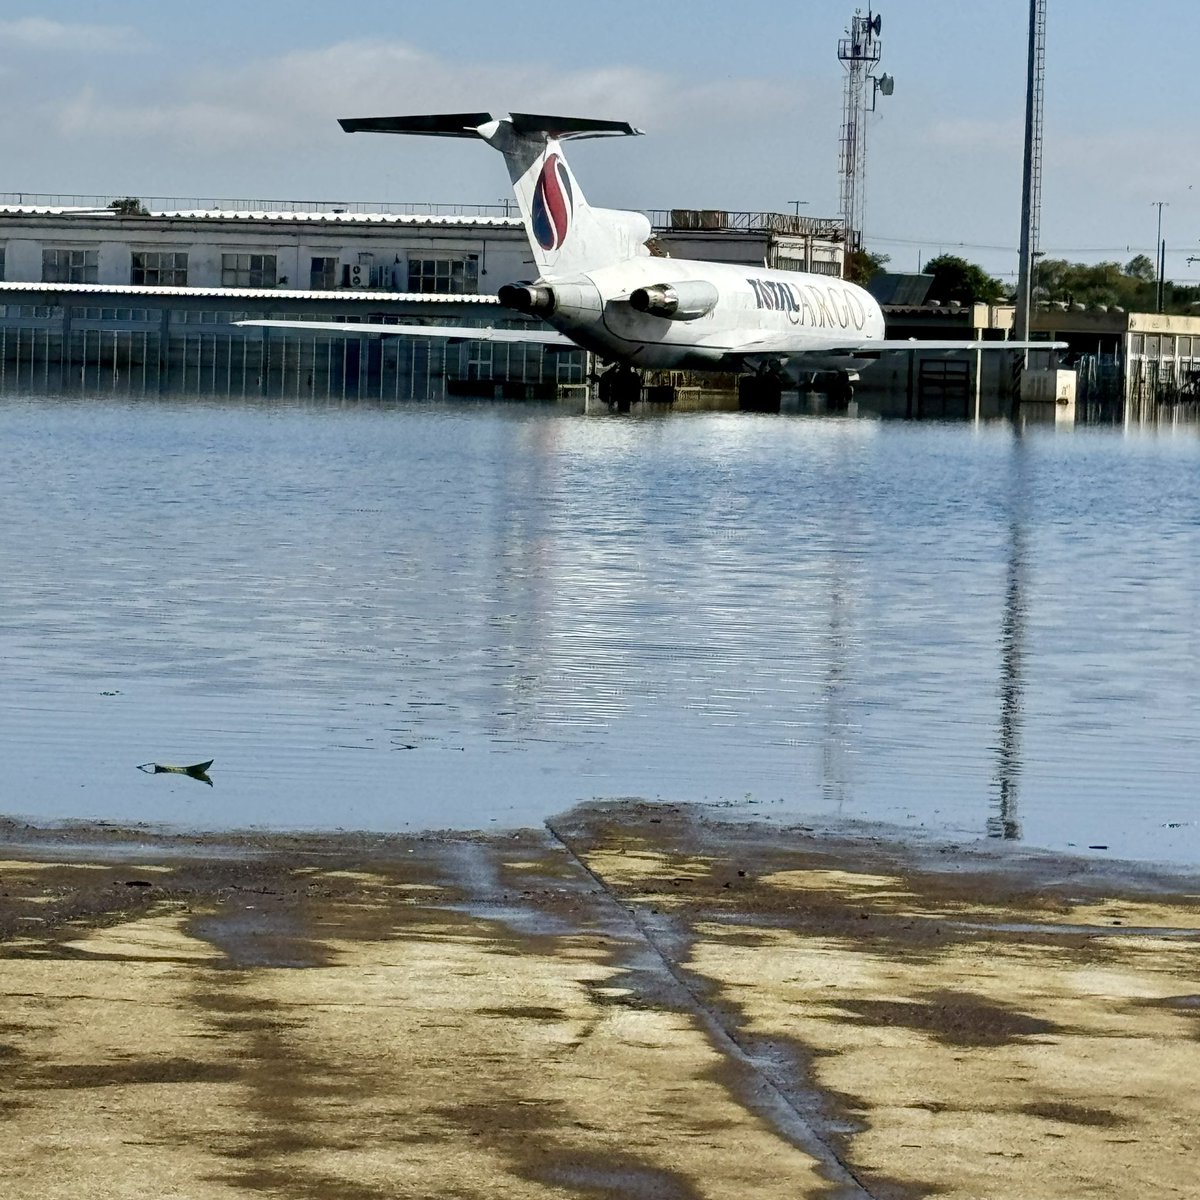 O nível da água no Aeroporto Salgado Filho diminuiu significativamente, mas ainda tem trechos alagados. A partir da próxima semana, com a pista seca, a Fraport começará a fazer testes para avaliar o nível de desgaste. A religação da energia elétrica e sistema de água e esgoto